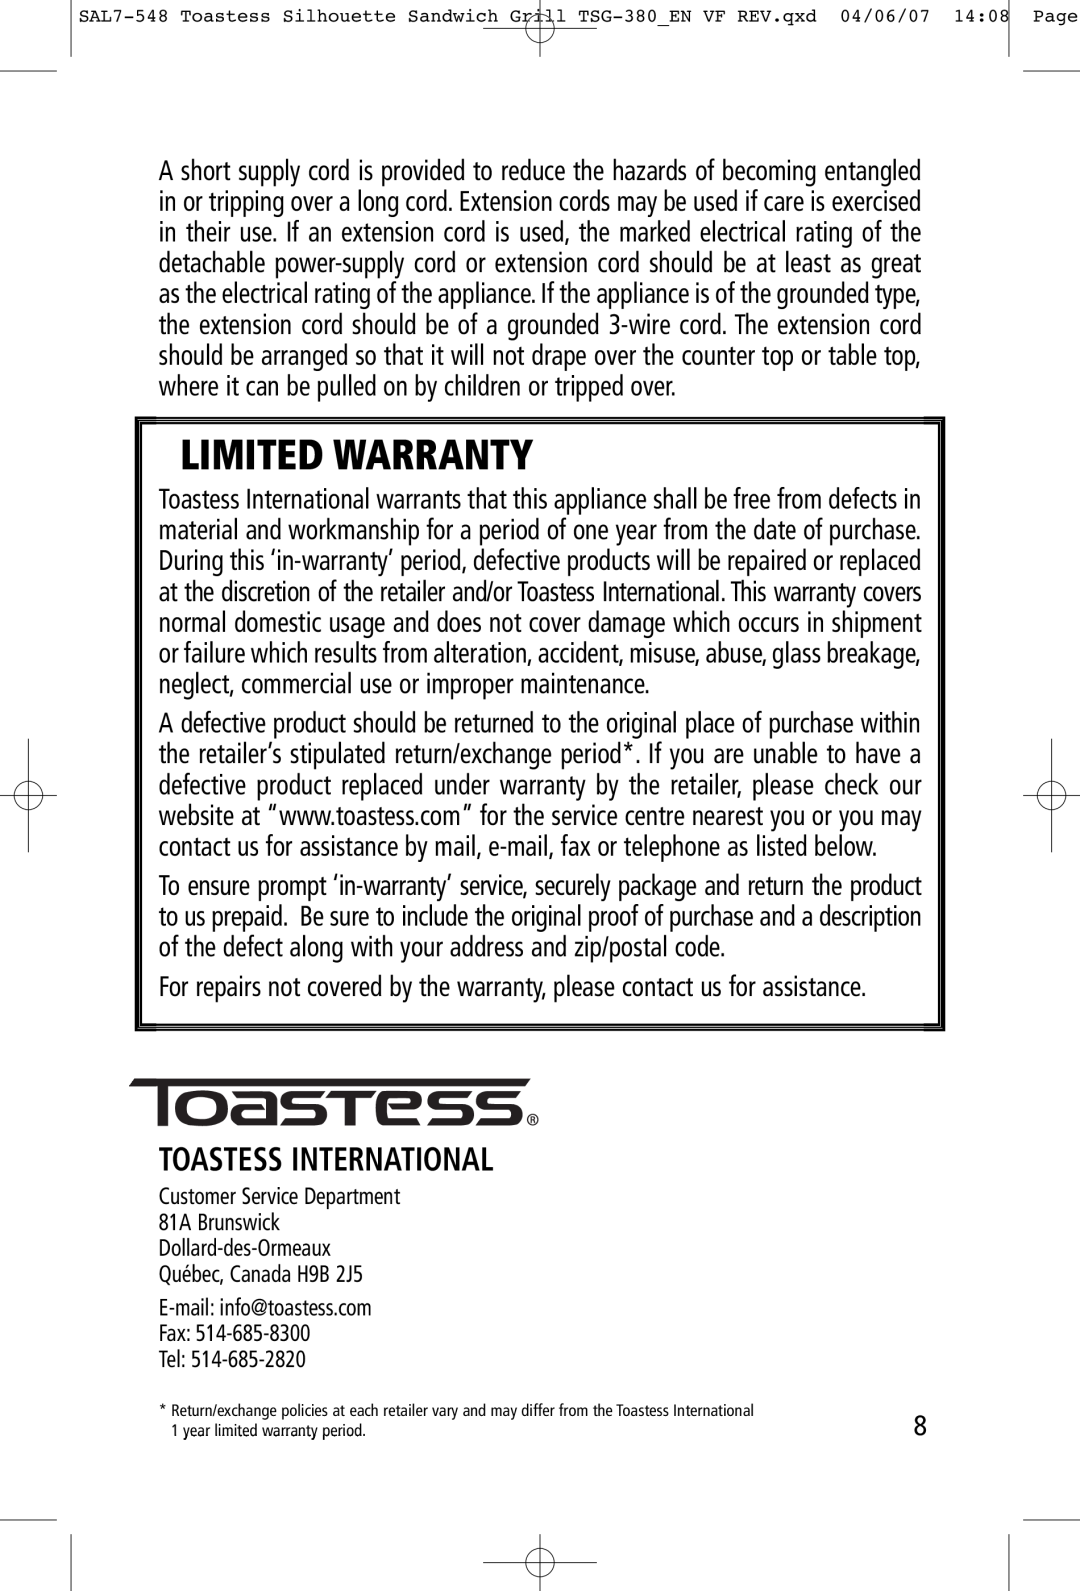 Toastess TSG-380 manual Toastess International, Limited Warranty 